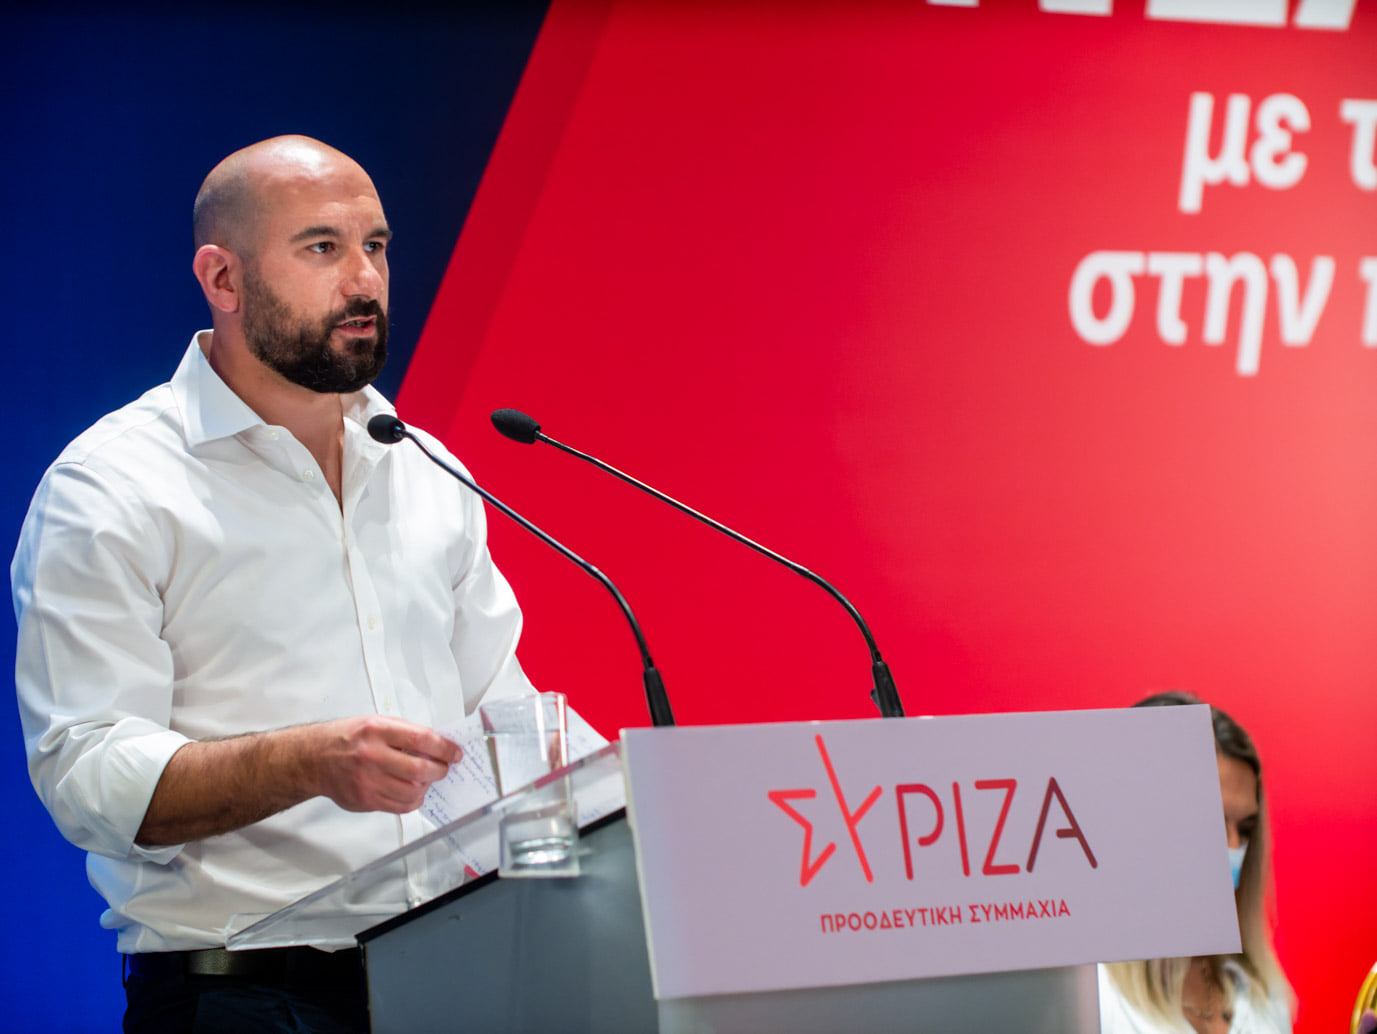 Δ. Τζανακόπουλος: Πρώτη φορά βλέπω πρωθυπουργό να εκλιπαρεί για πρόταση μομφής για να μπορέσει ενδεχομένως να την χρησιμοποιήσει πριν βγουν και άλλα στο φως της δημοσιότητας